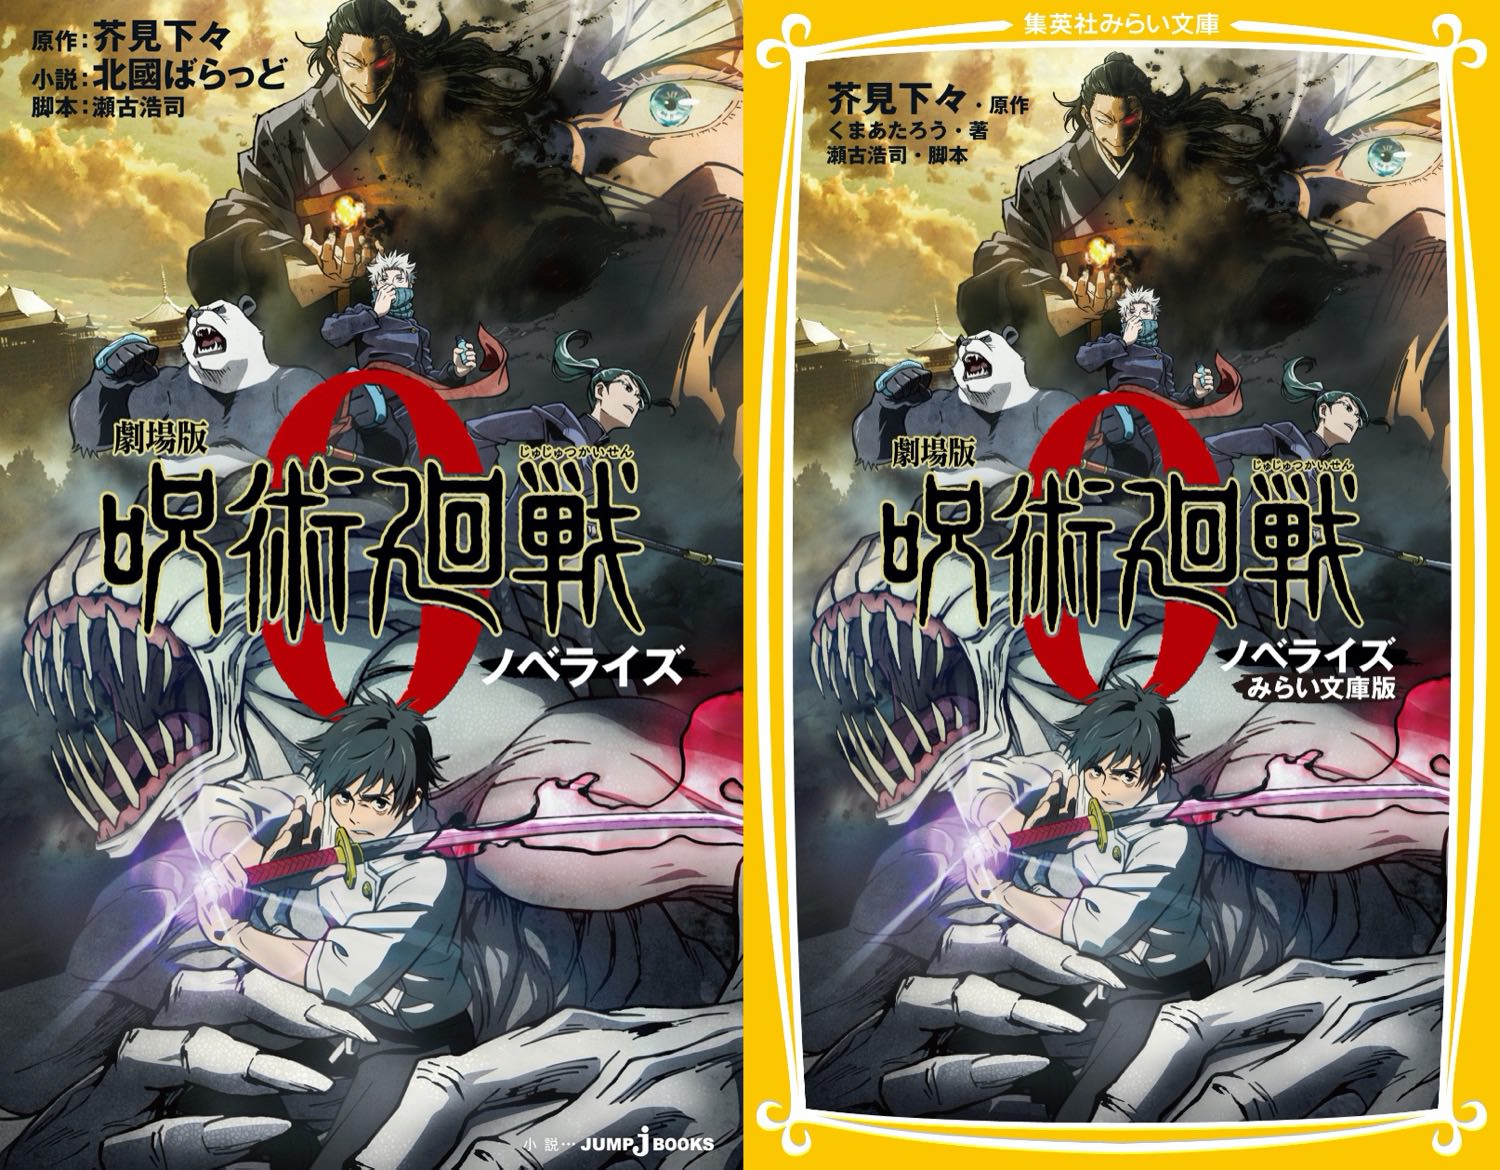 劇場版「呪術廻戦 0」小説版 12月24日にノベライズ2冊同時発売!